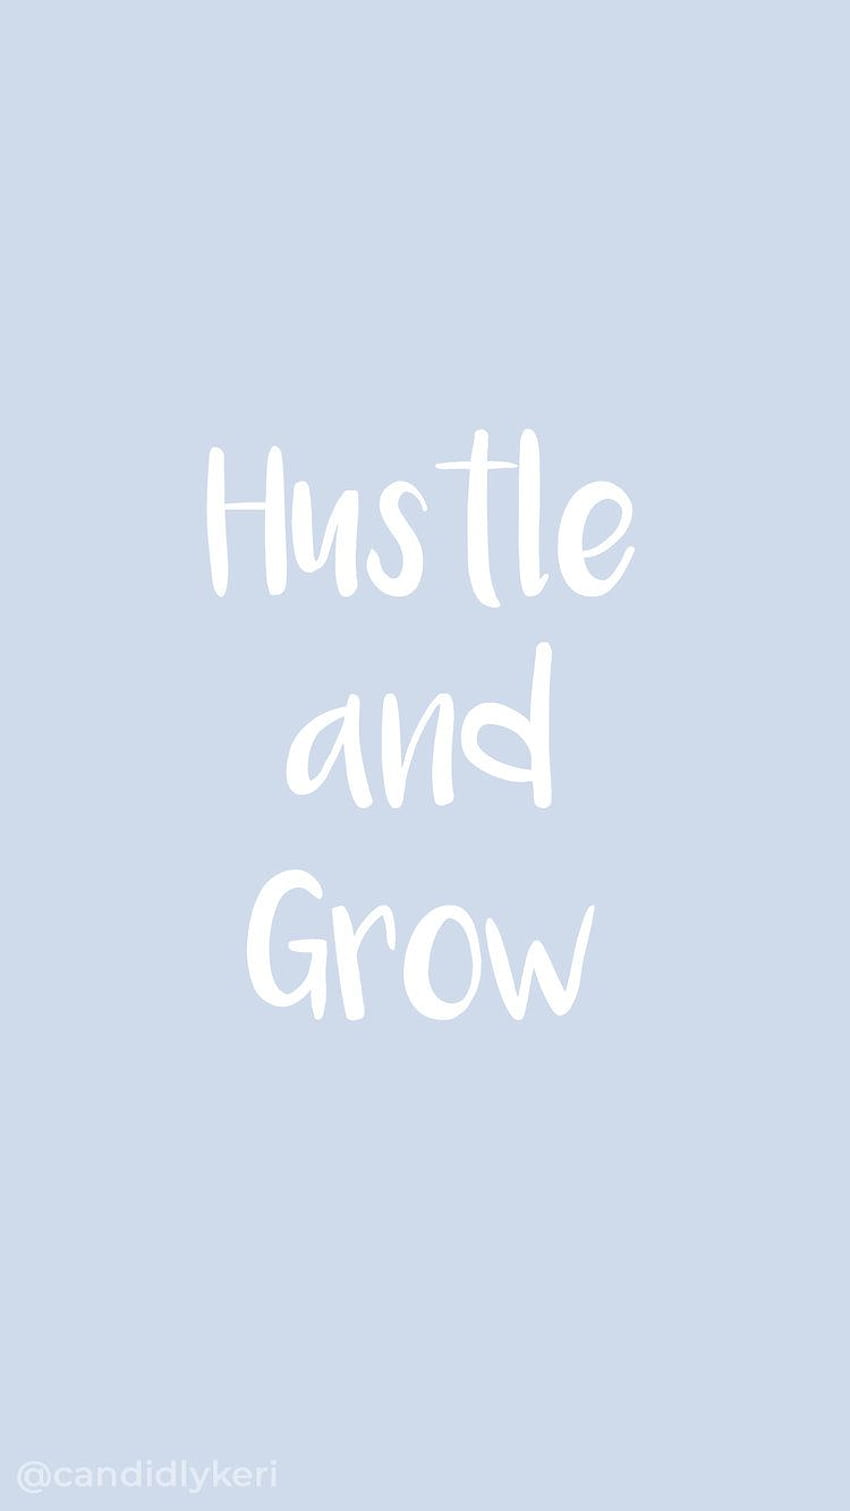 Hustle And Grow син ръкописен шрифт цитат вдъхновяващ фон можете за на. Вдъхновяващ фон, сини цитати, цитати на шрифтове HD тапет за телефон